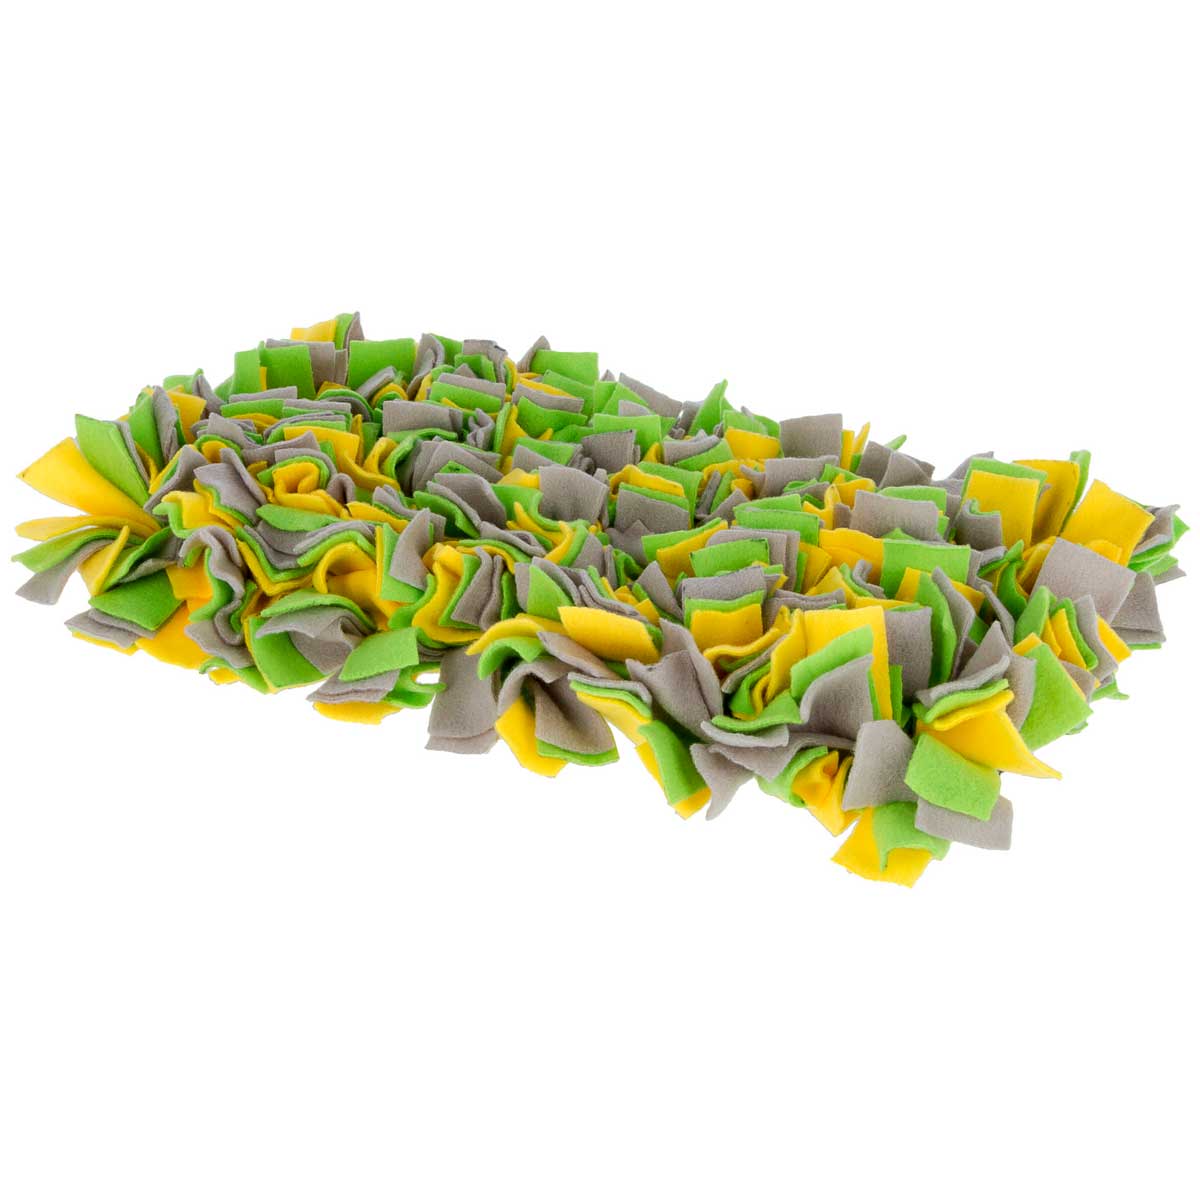 Kerbl Tappeto da annusare giallo/verde/grigio 70 x 50 cm